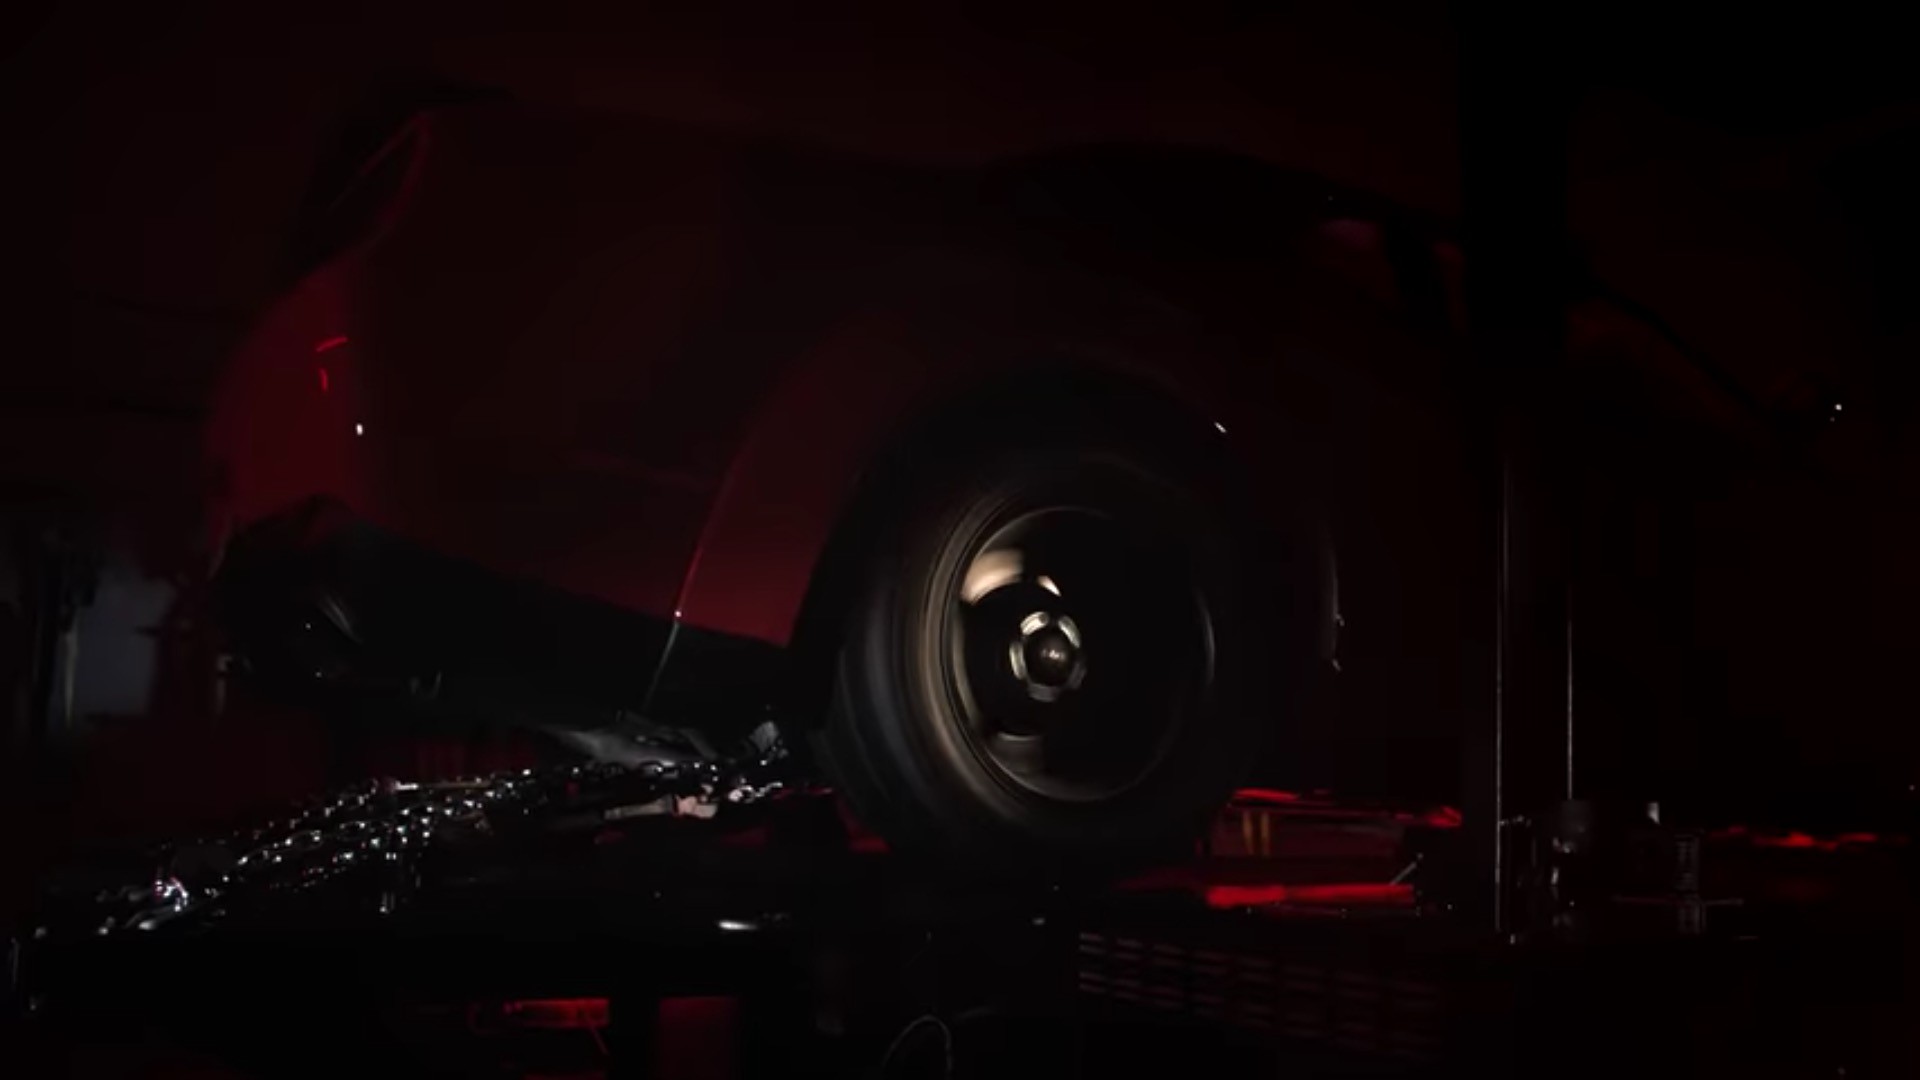 Dodge Teases 2018 Challenger SRT Demon Specs: 757 HP, 700+ Lb-Ft, 10.5s ...